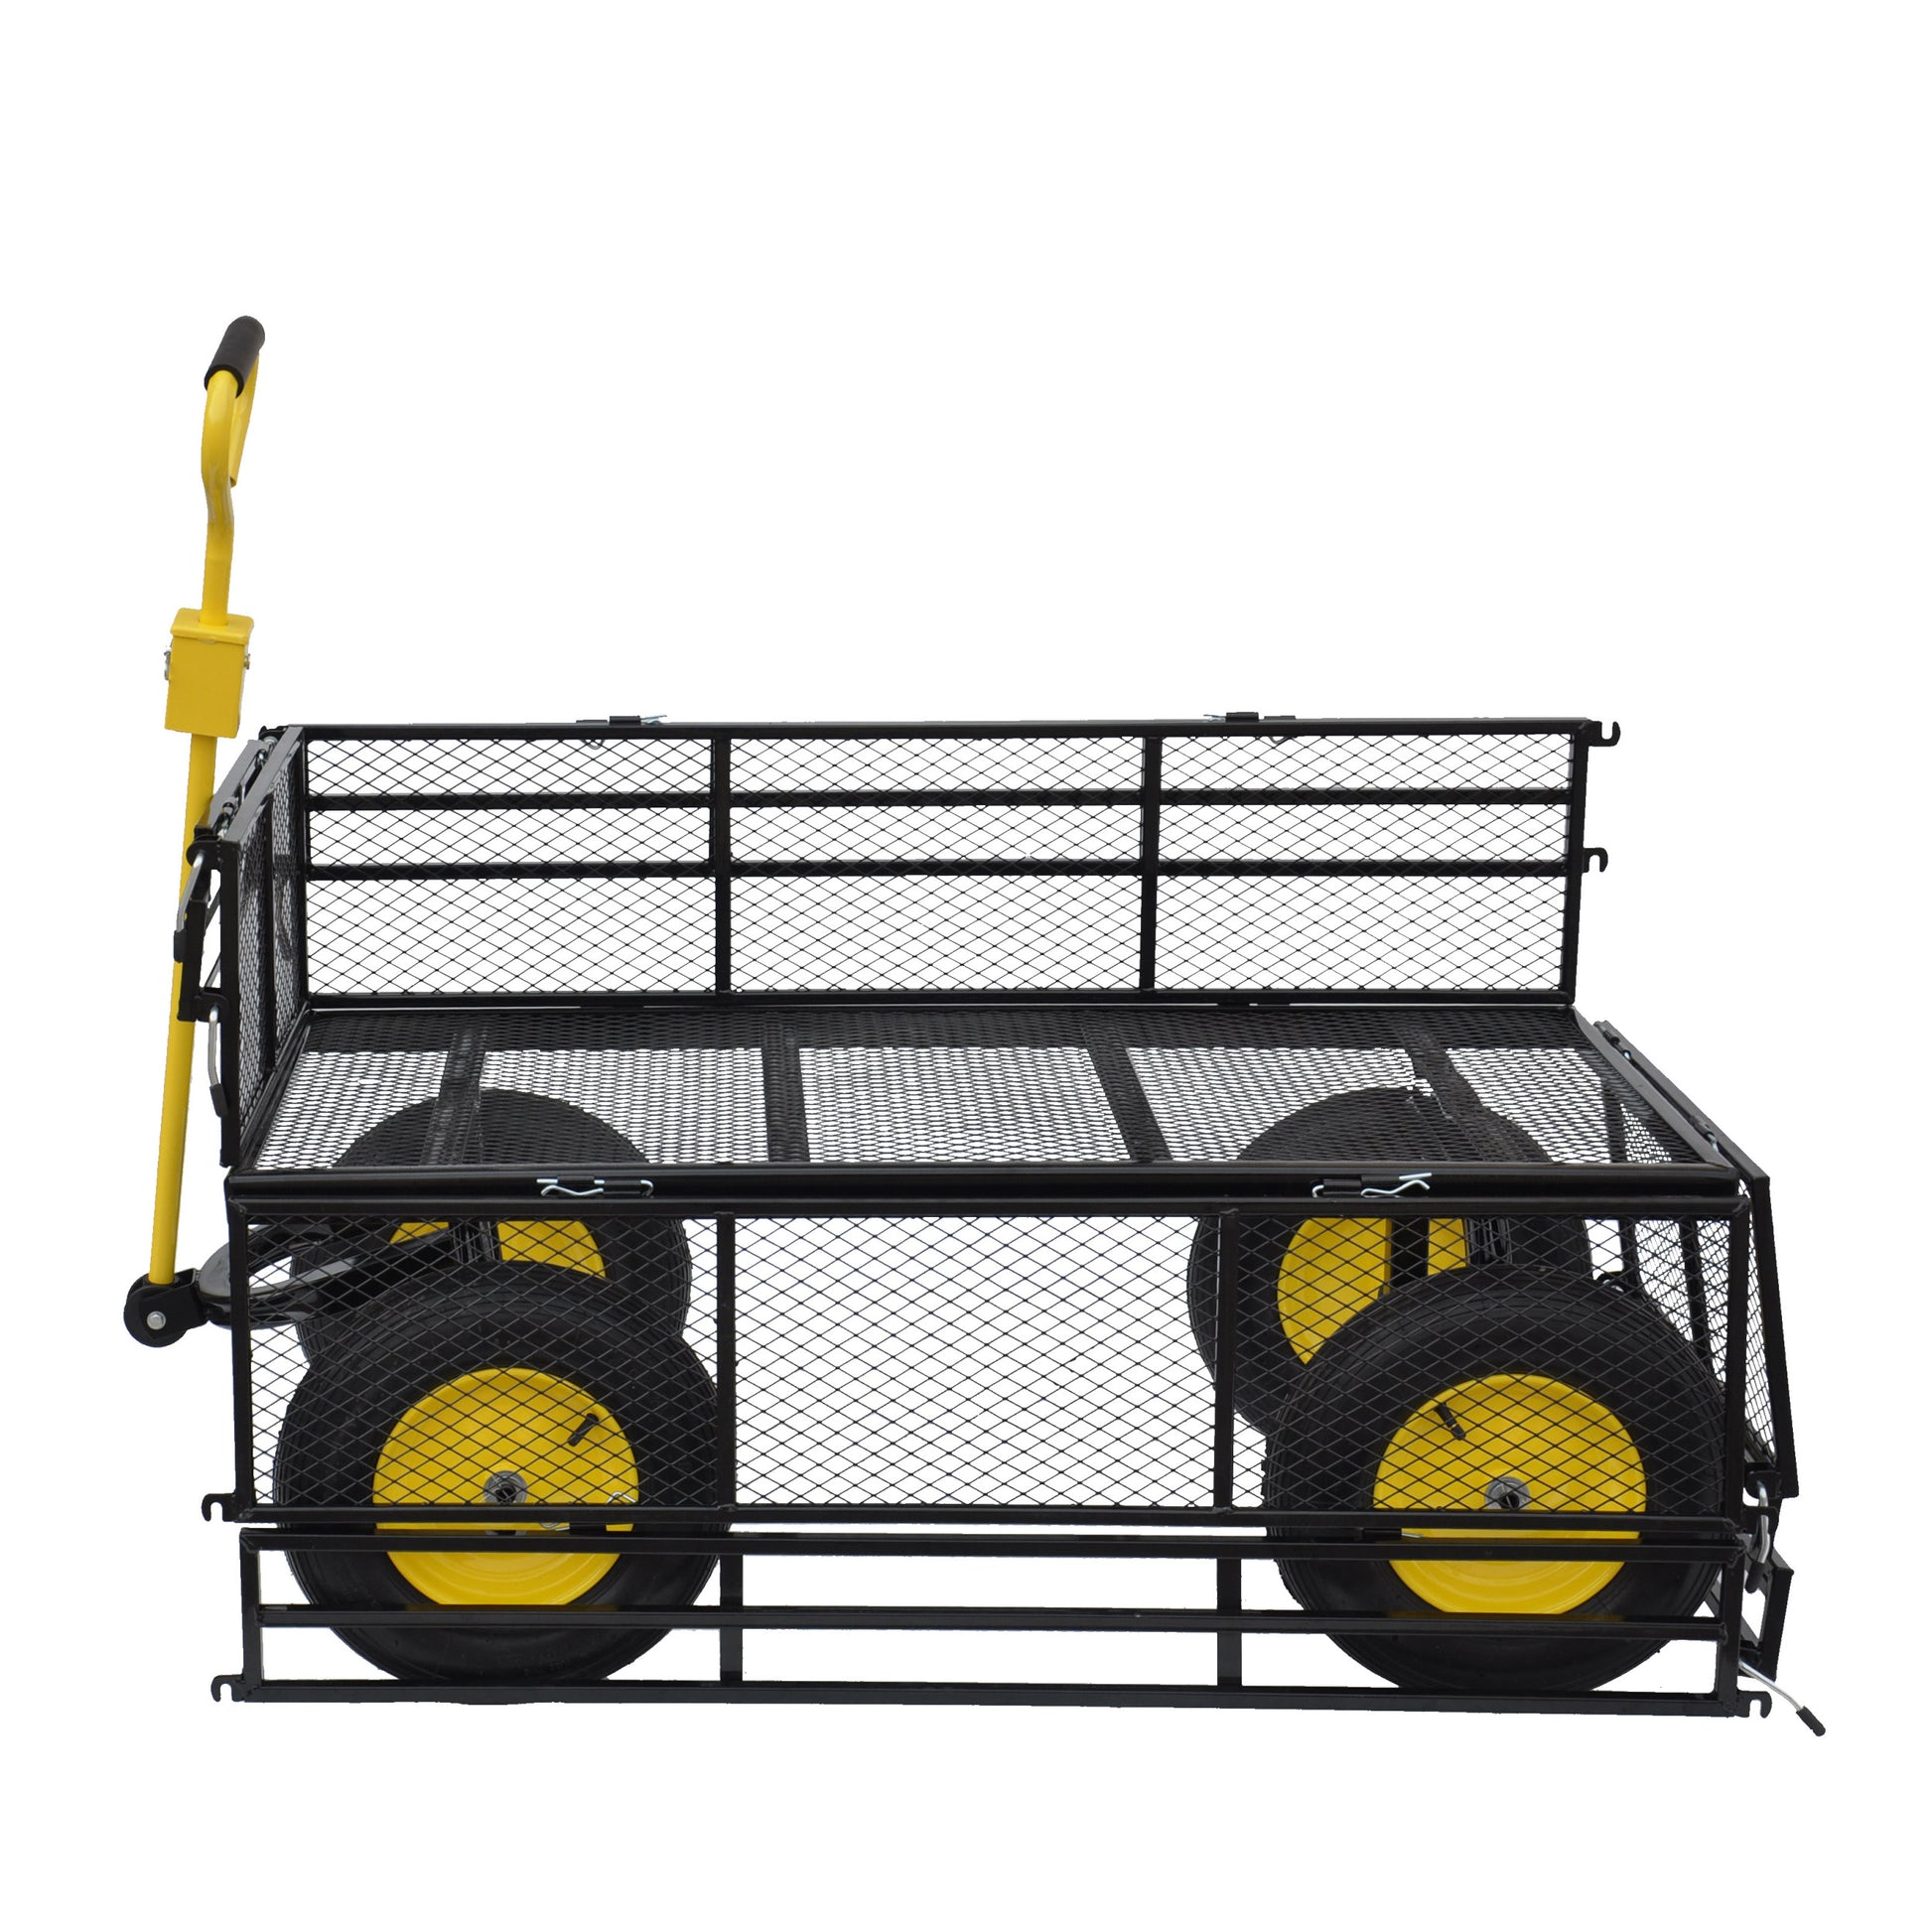 Big Wagon Cart Garden Cart Trucks Make It Easier